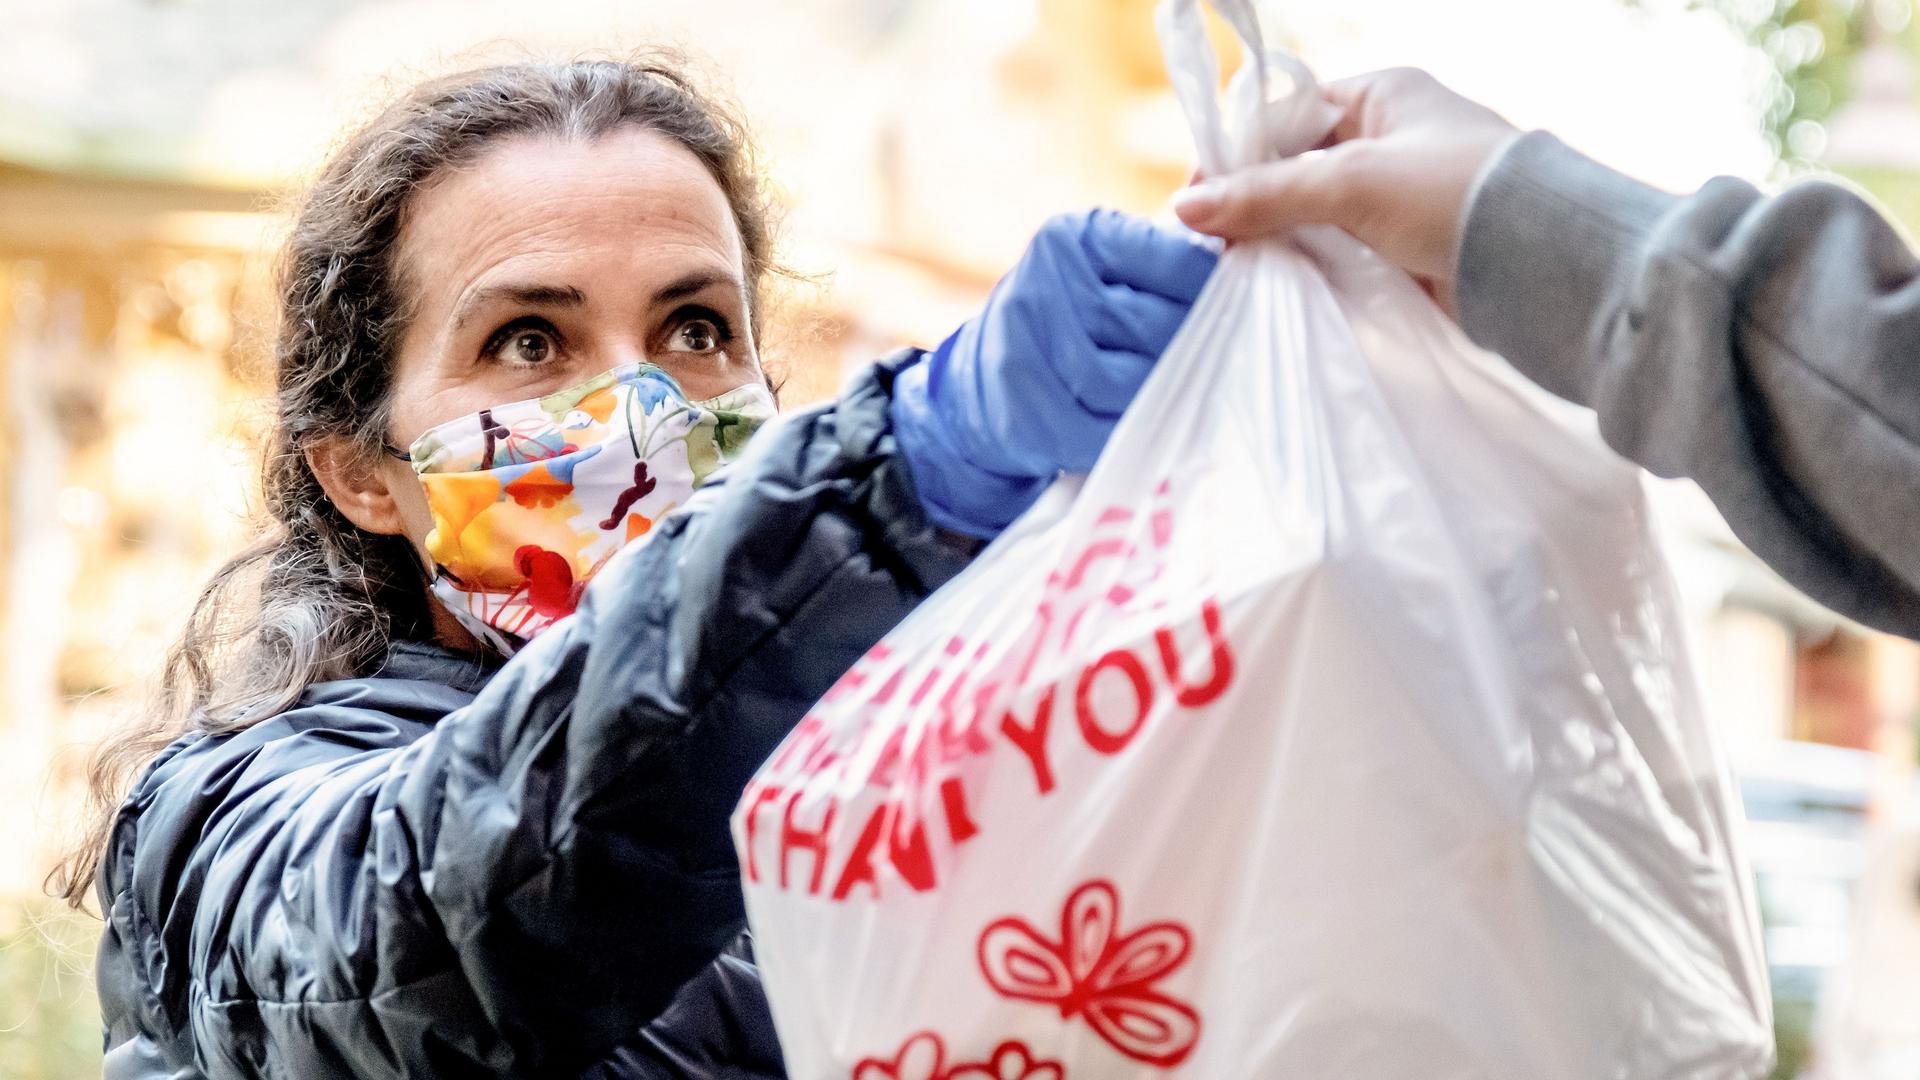 Eine Frau mit Mund-Nasen-Schutz nimmt eine Plastiktüte auf der "Thank you" steht entgegen.